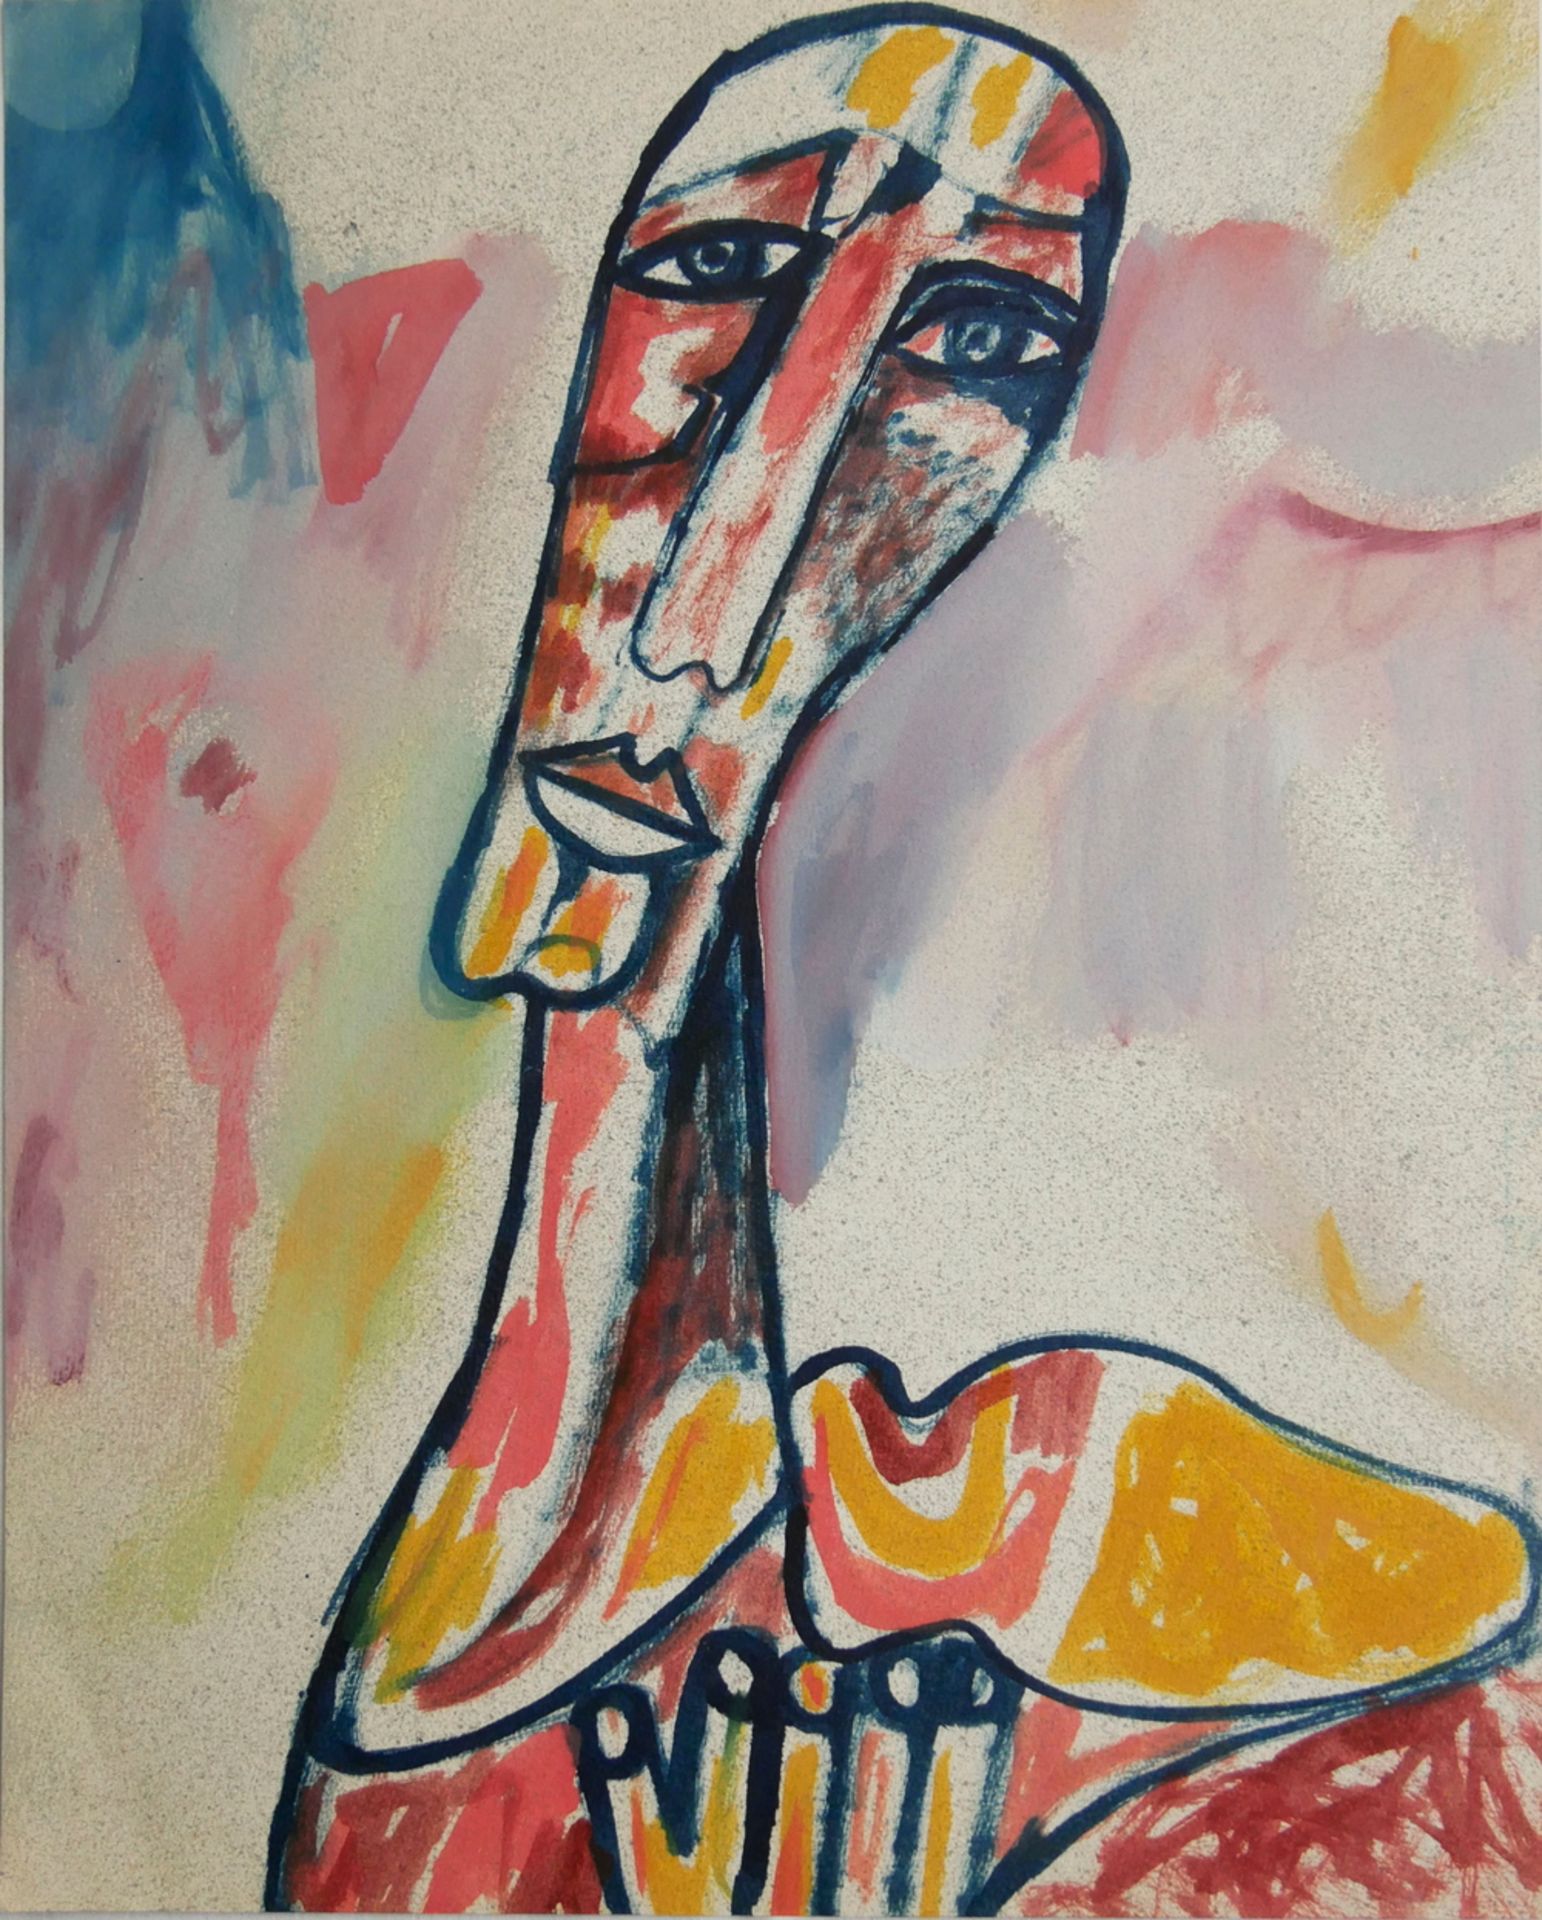 Buntstiftzeichnung, abstrakter Kopf, wohl Vladimir Erlebach (1934-2018), Maße: Breite ca. 35 cm